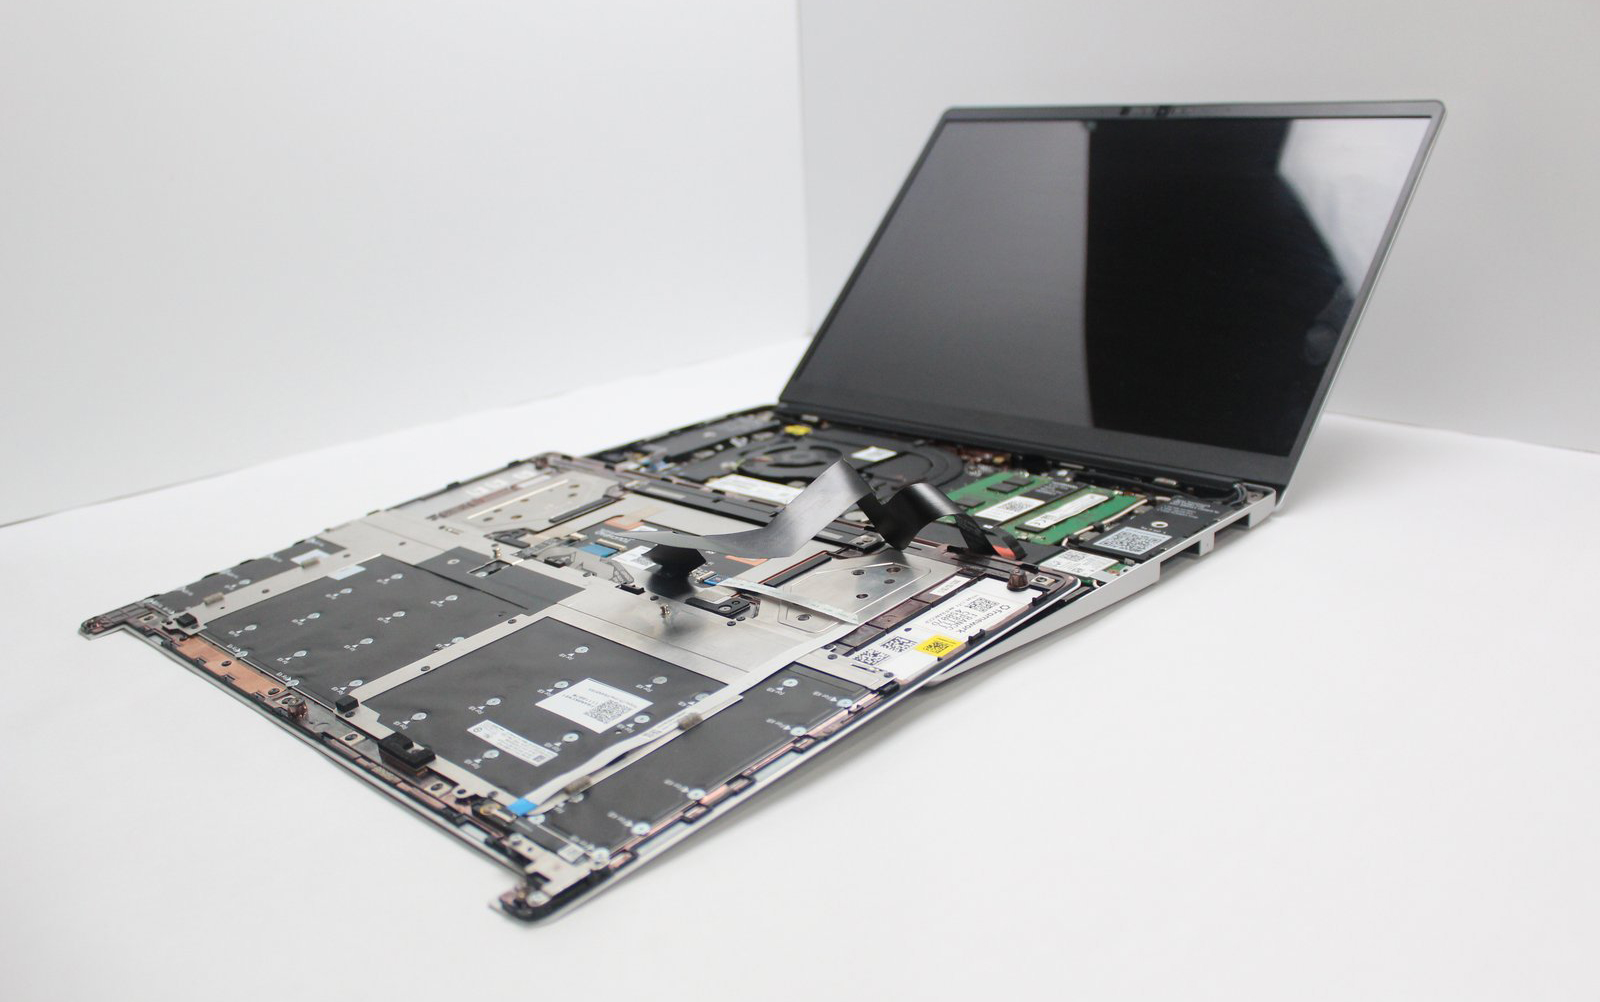 Ноутбук Framework Laptop DIY Edition со снятой верхней крышкой корпуса